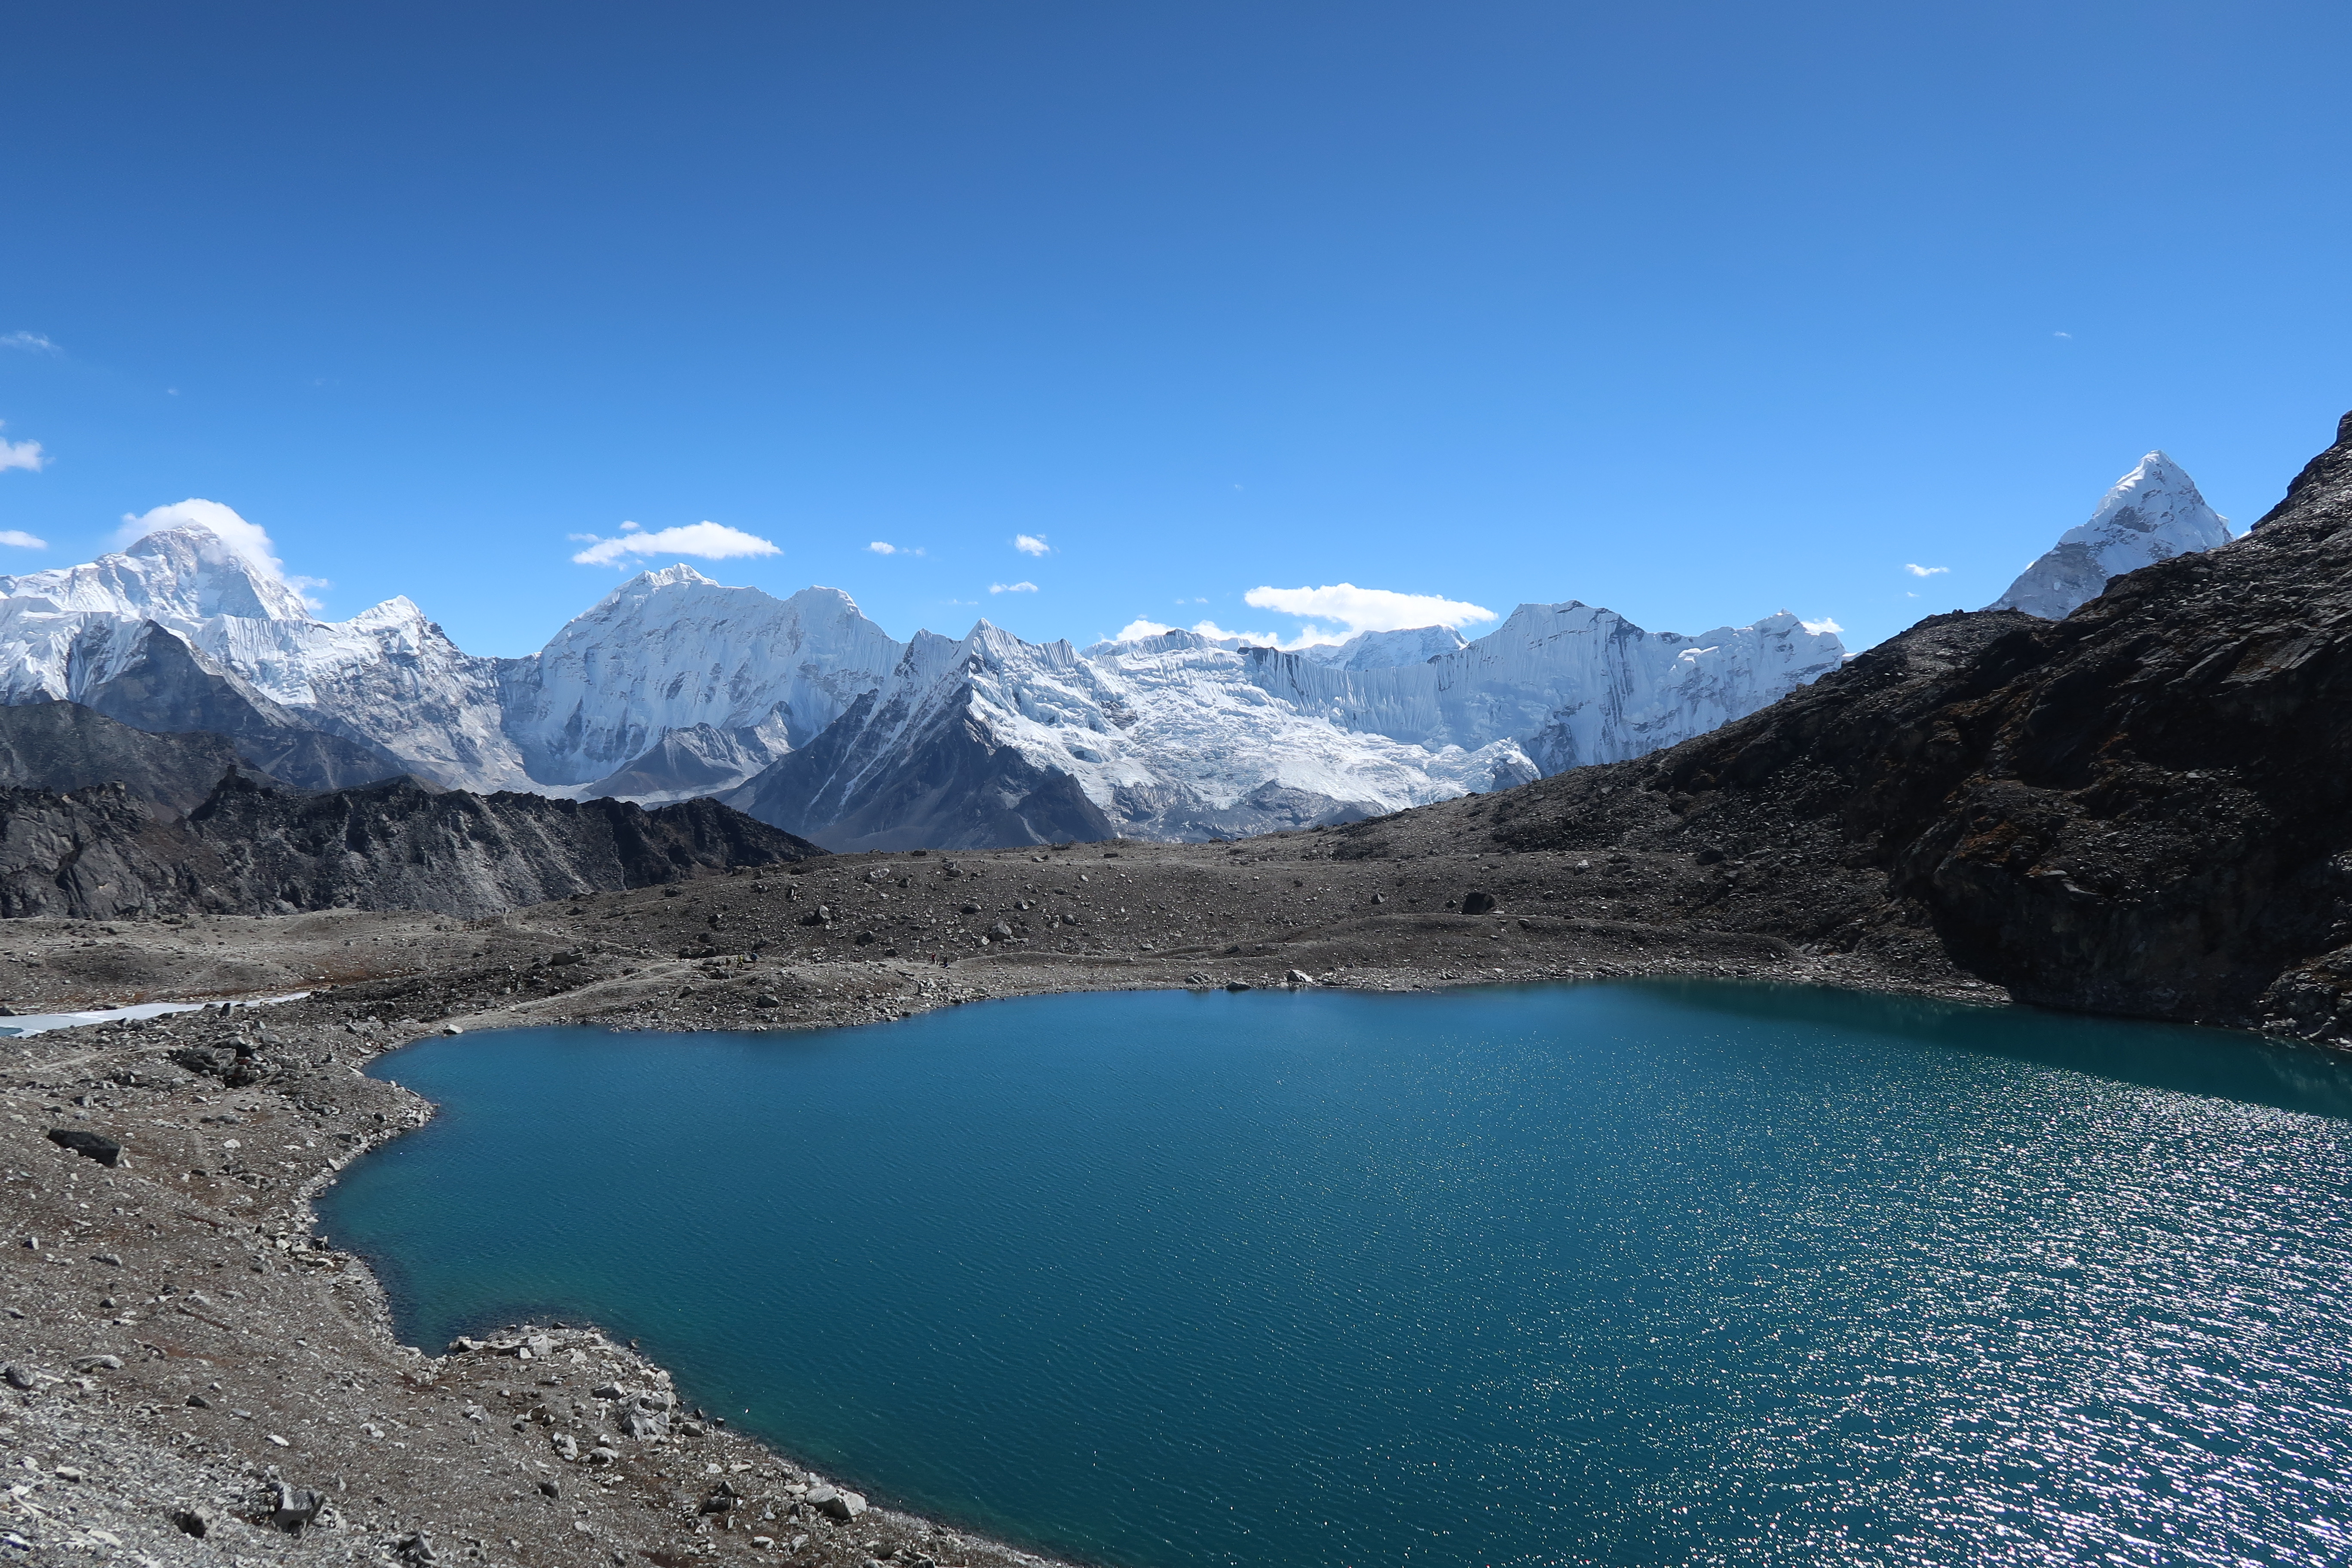 Himalayan view. Photo by Hannah Lock